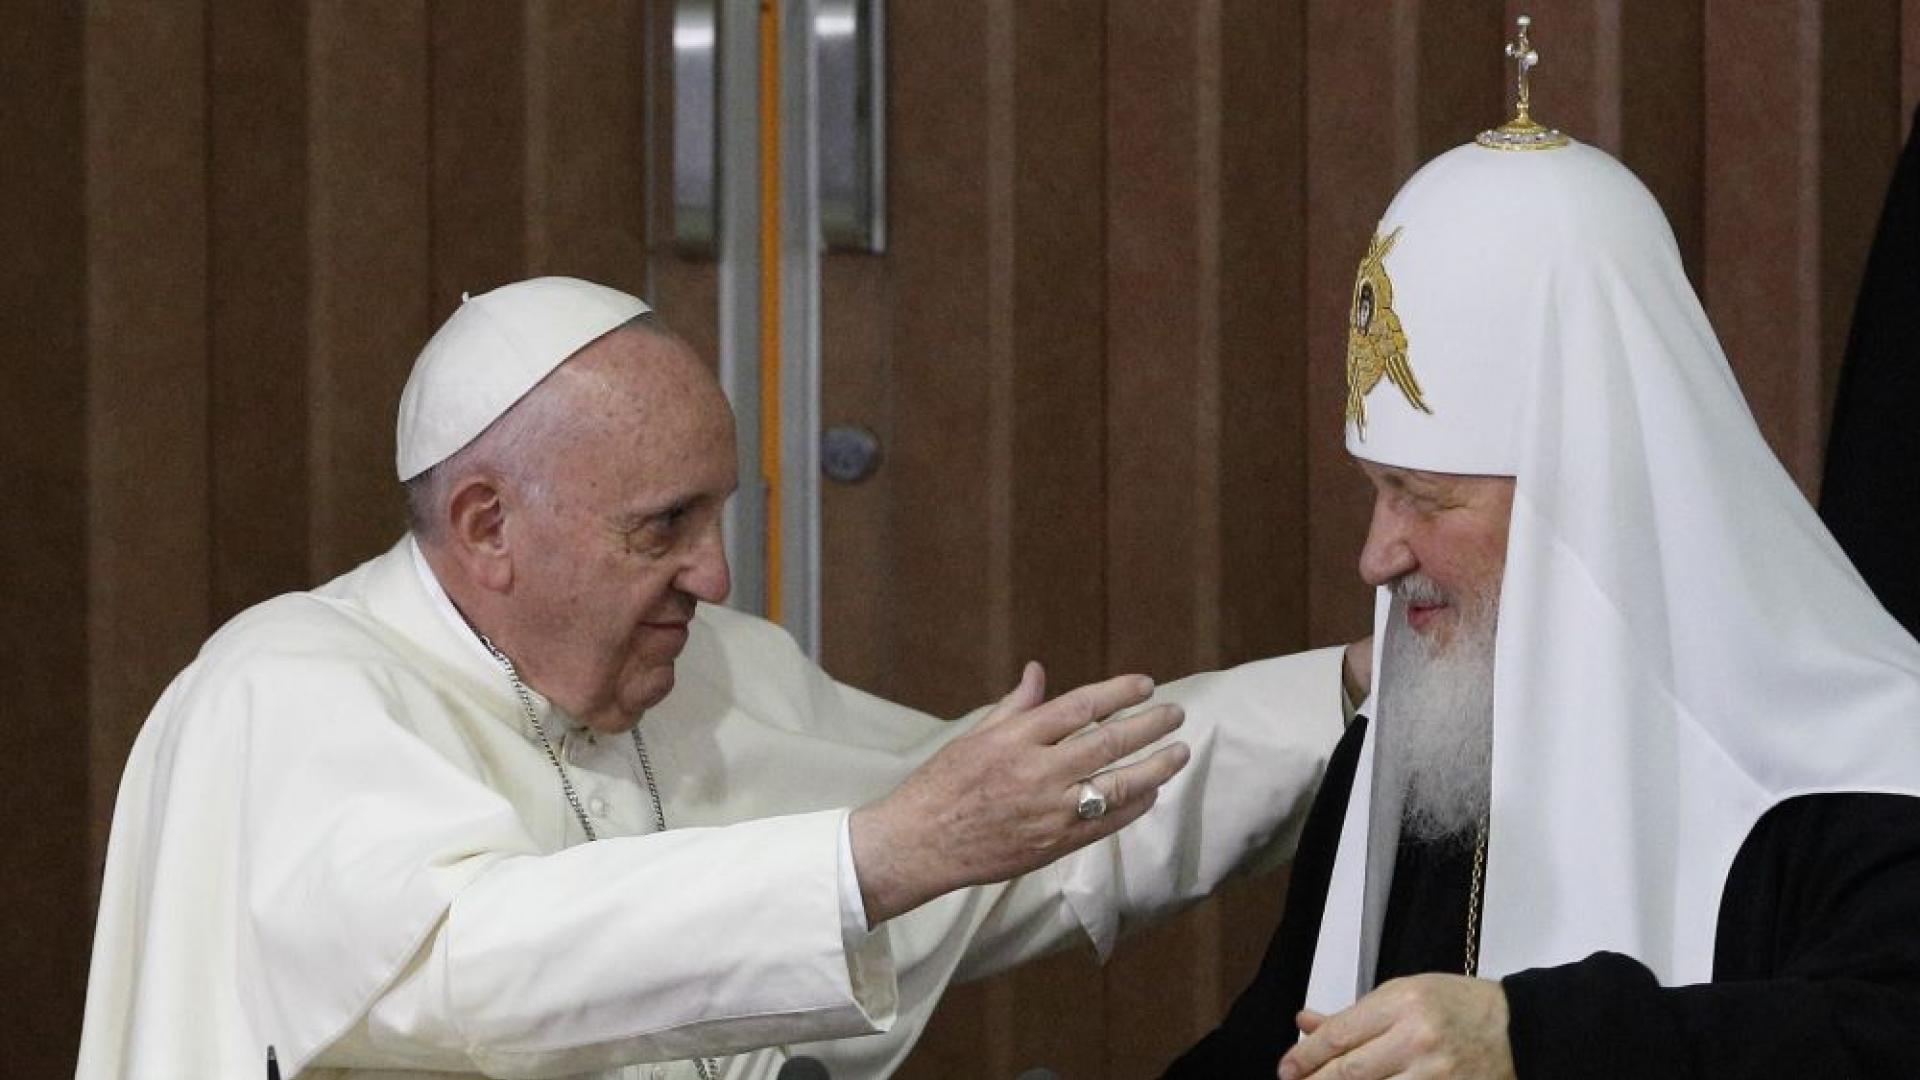 Papst Franziskus und Patriarch Kyrill I. umarmen sich nach der Unterzeichnung der gemeinsamen Erklärung am 12. Februar 2016 am Flughafen von Havanna (Kuba). Es ist das erste Treffen eines römischen Papstes mit dem Patriarchen der russisch-orthodoxen Kirche.